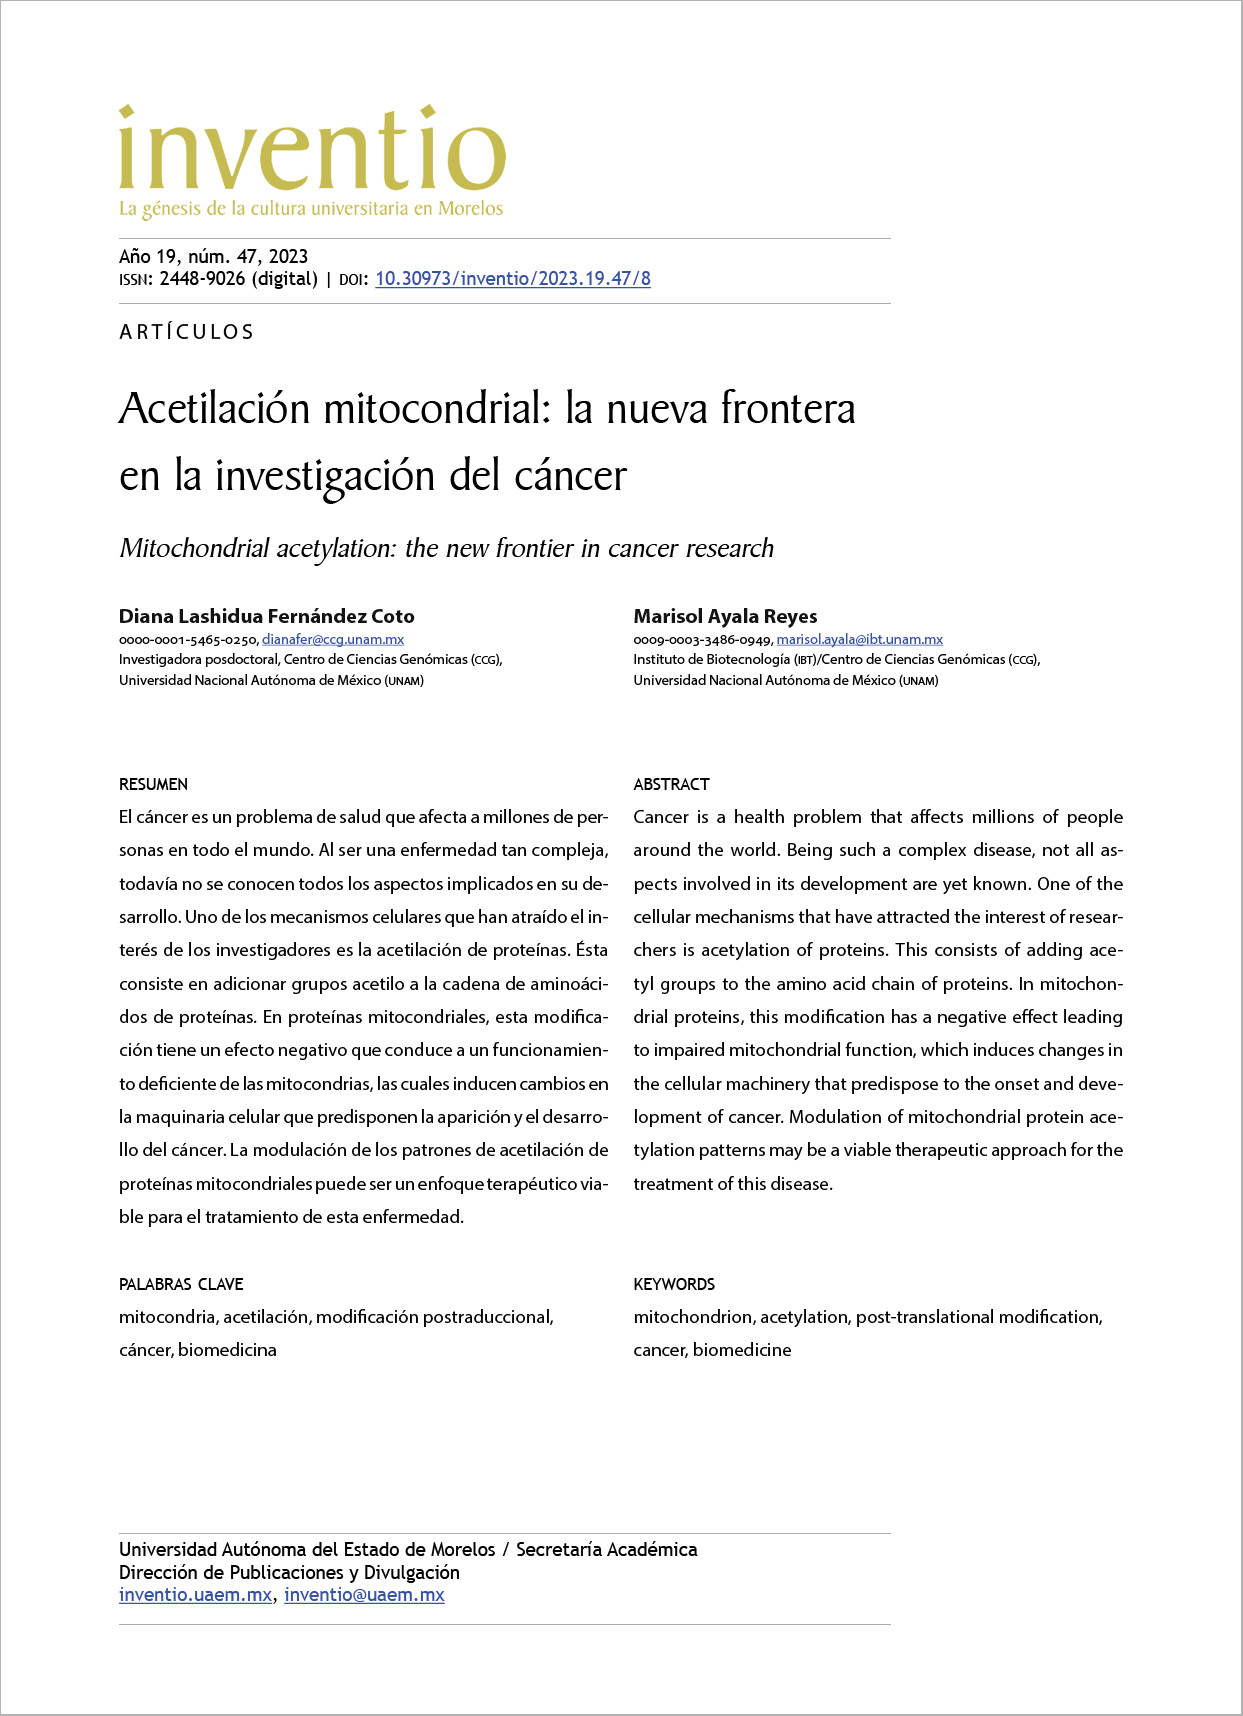 Acetilación mitocondrial: la nueva frontera en la investigación del cáncer